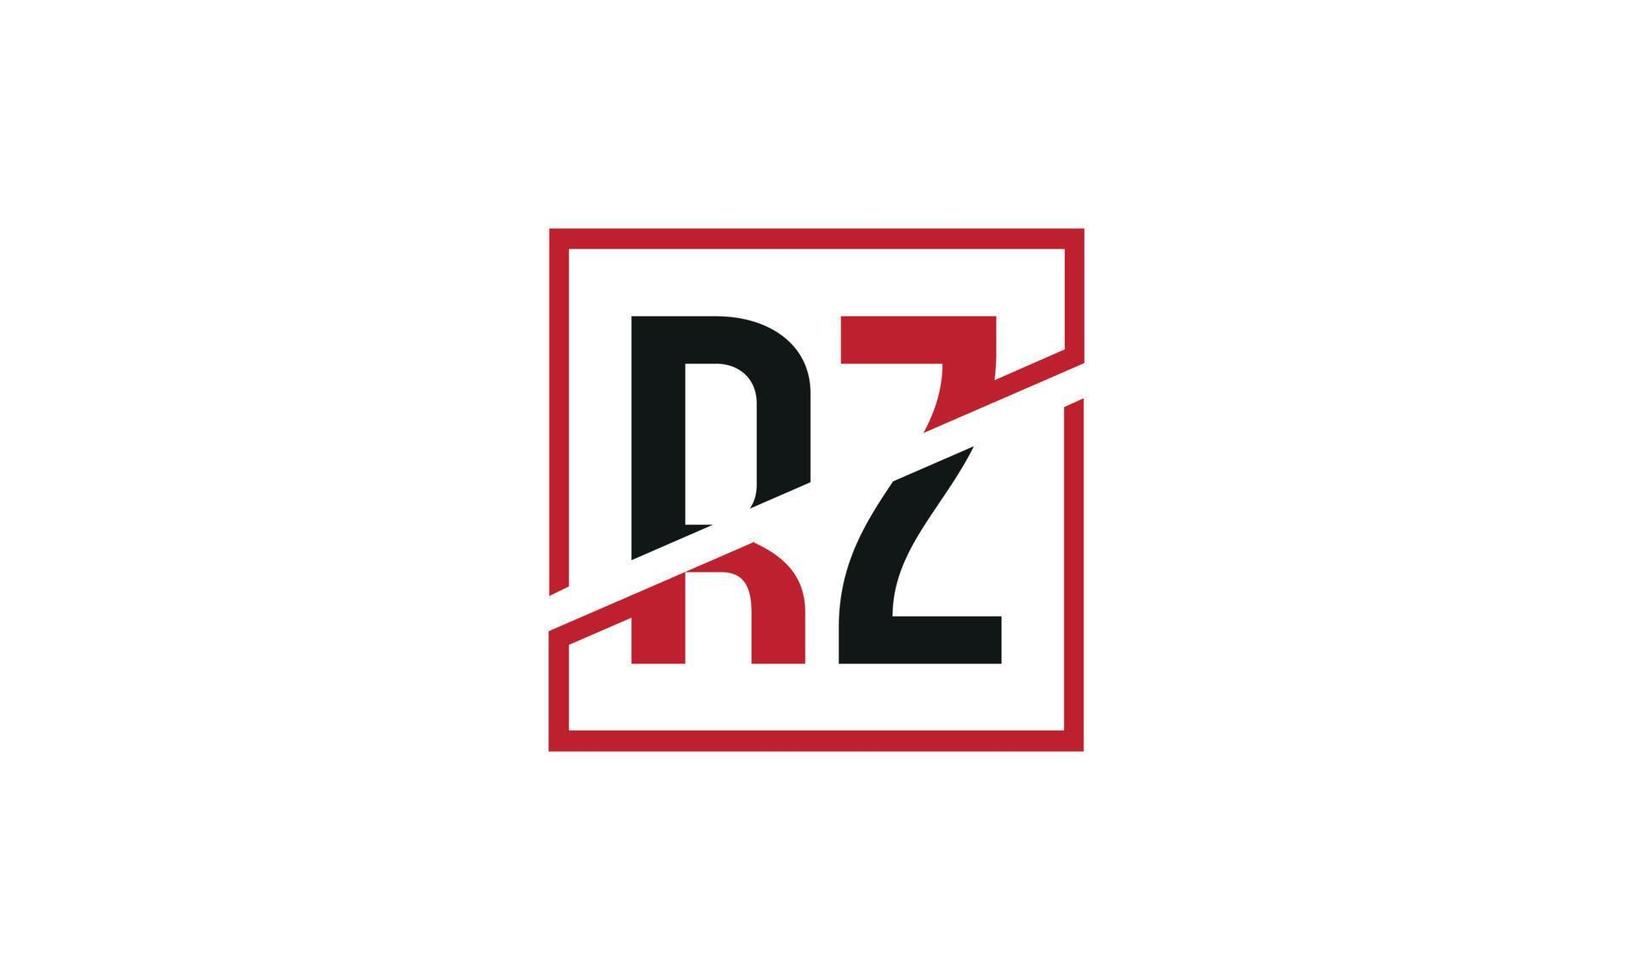 lettera rz logo professionista vettore file professionista vettore